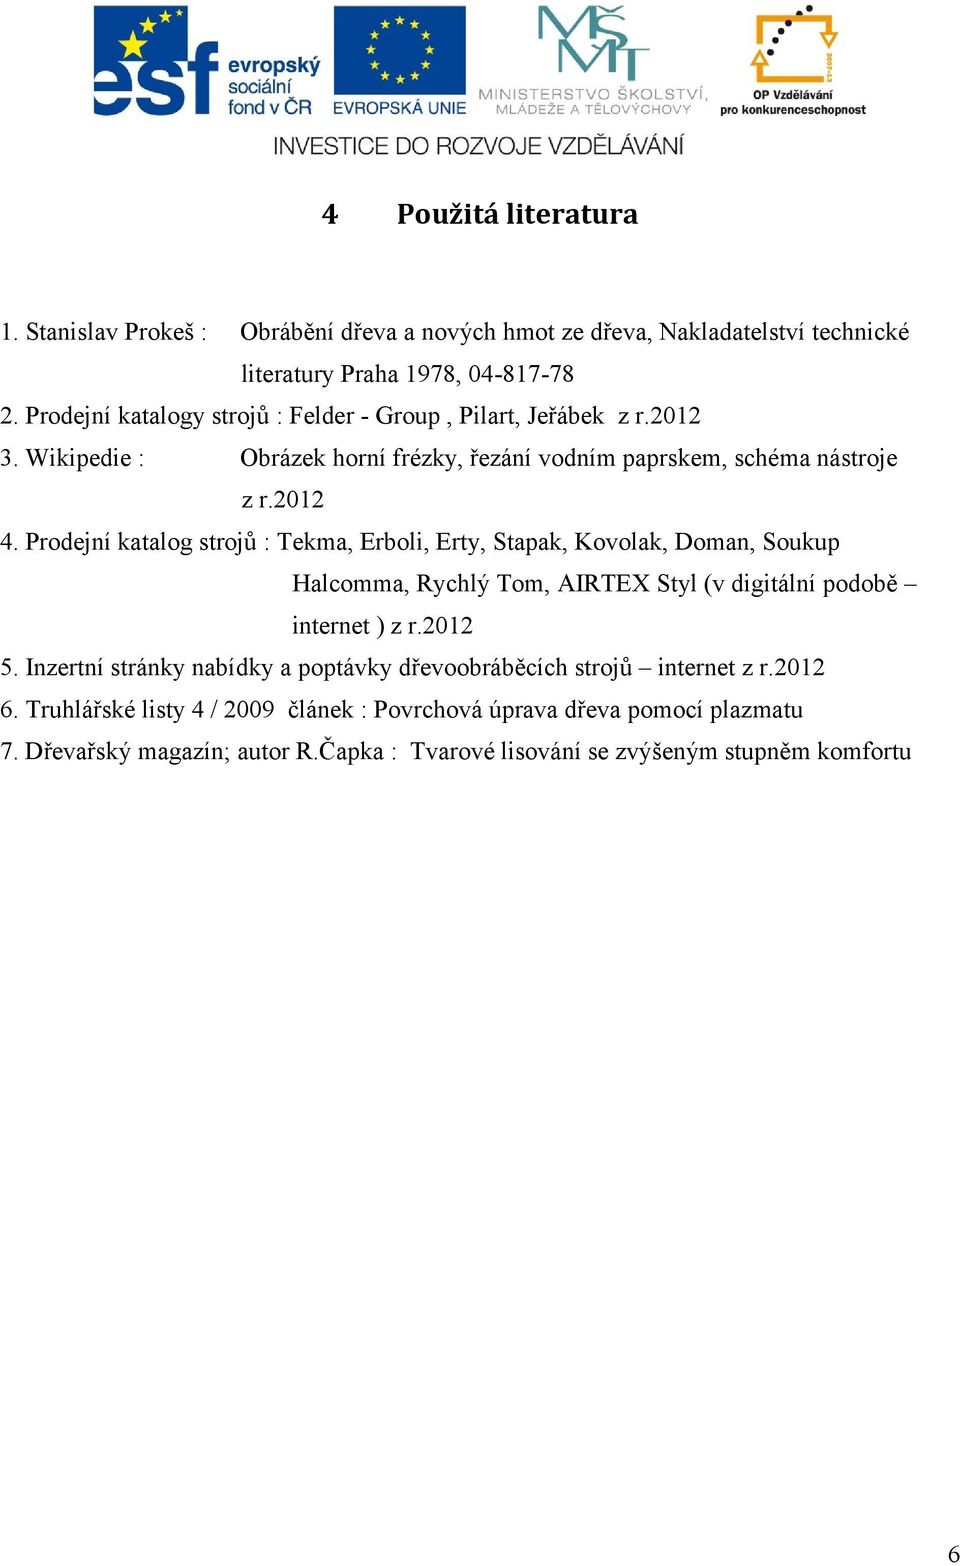 Prodejní katalog strojů : Tekma, Erboli, Erty, Stapak, Kovolak, Doman, Soukup Halcomma, Rychlý Tom, AIRTEX Styl (v digitální podobě internet ) z r.2012 5.